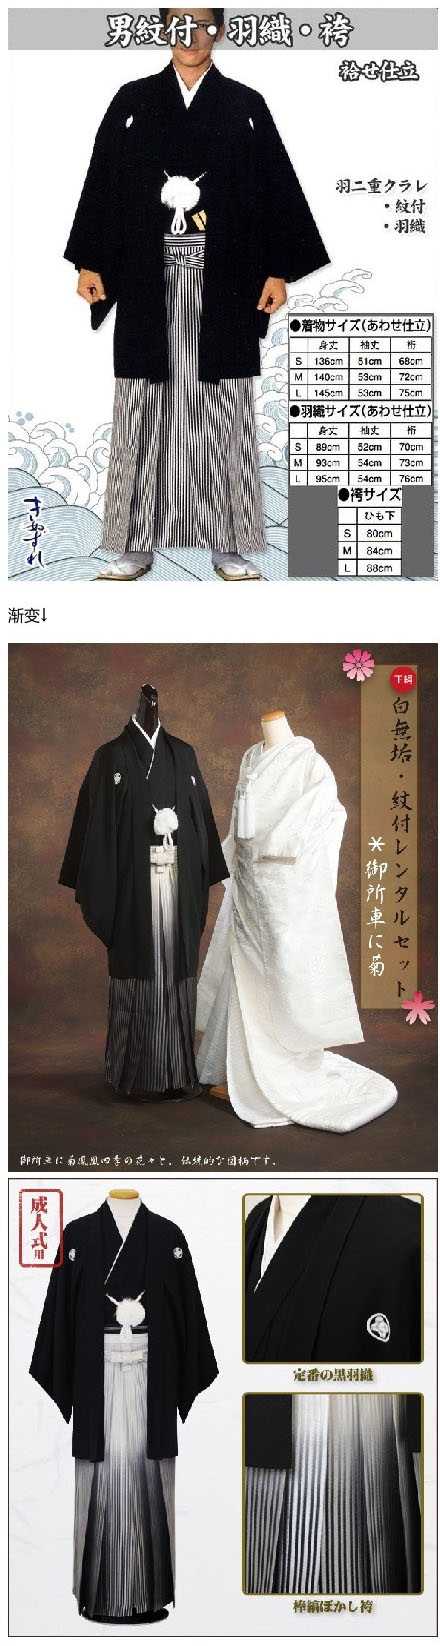 请介绍一下日本男士和服的种类 知乎